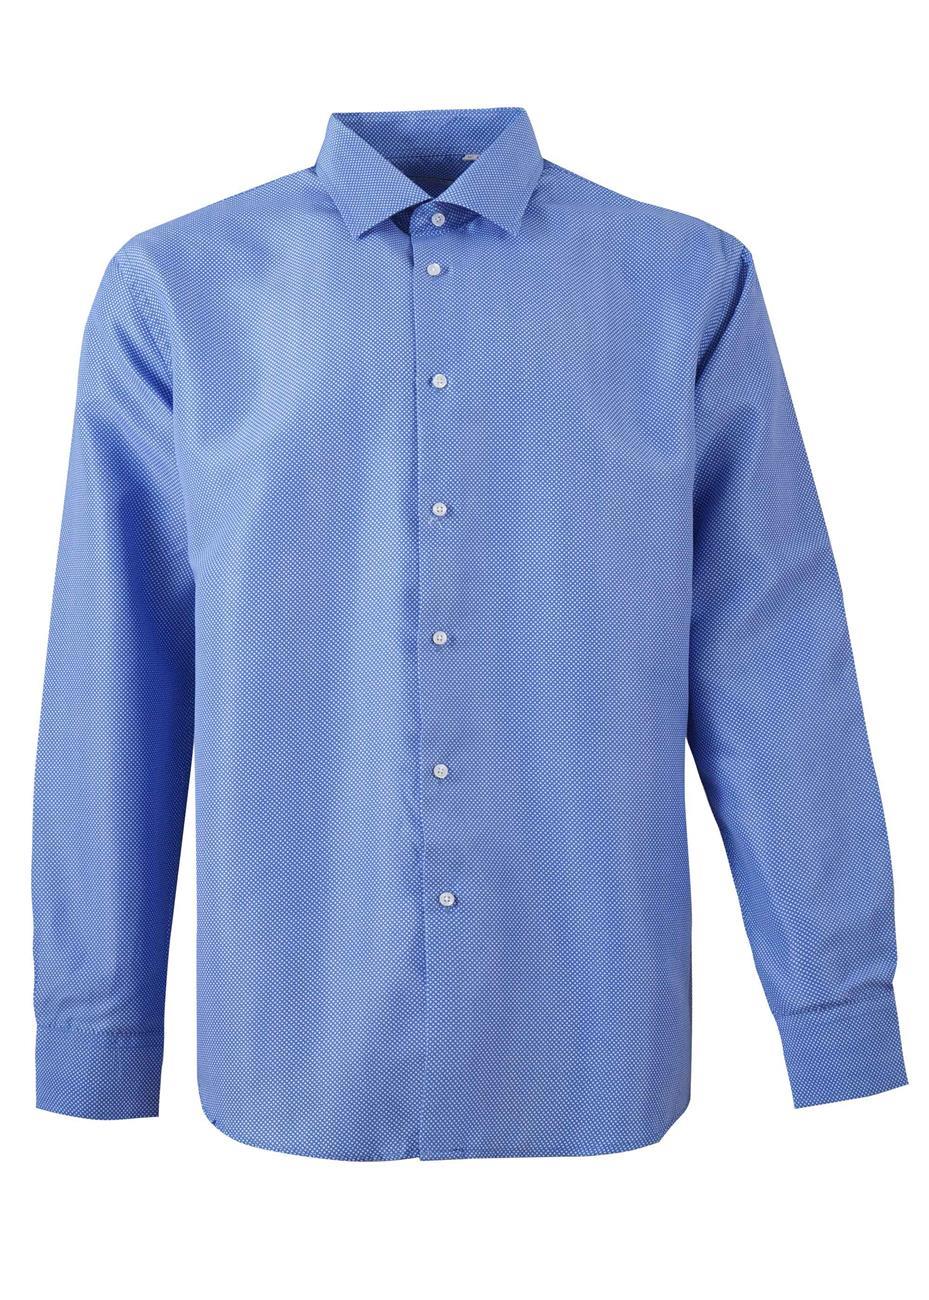 Ανδρικό πουκάμισο με διπλό κουμπί στη μανσέτα all-print. Casual Style